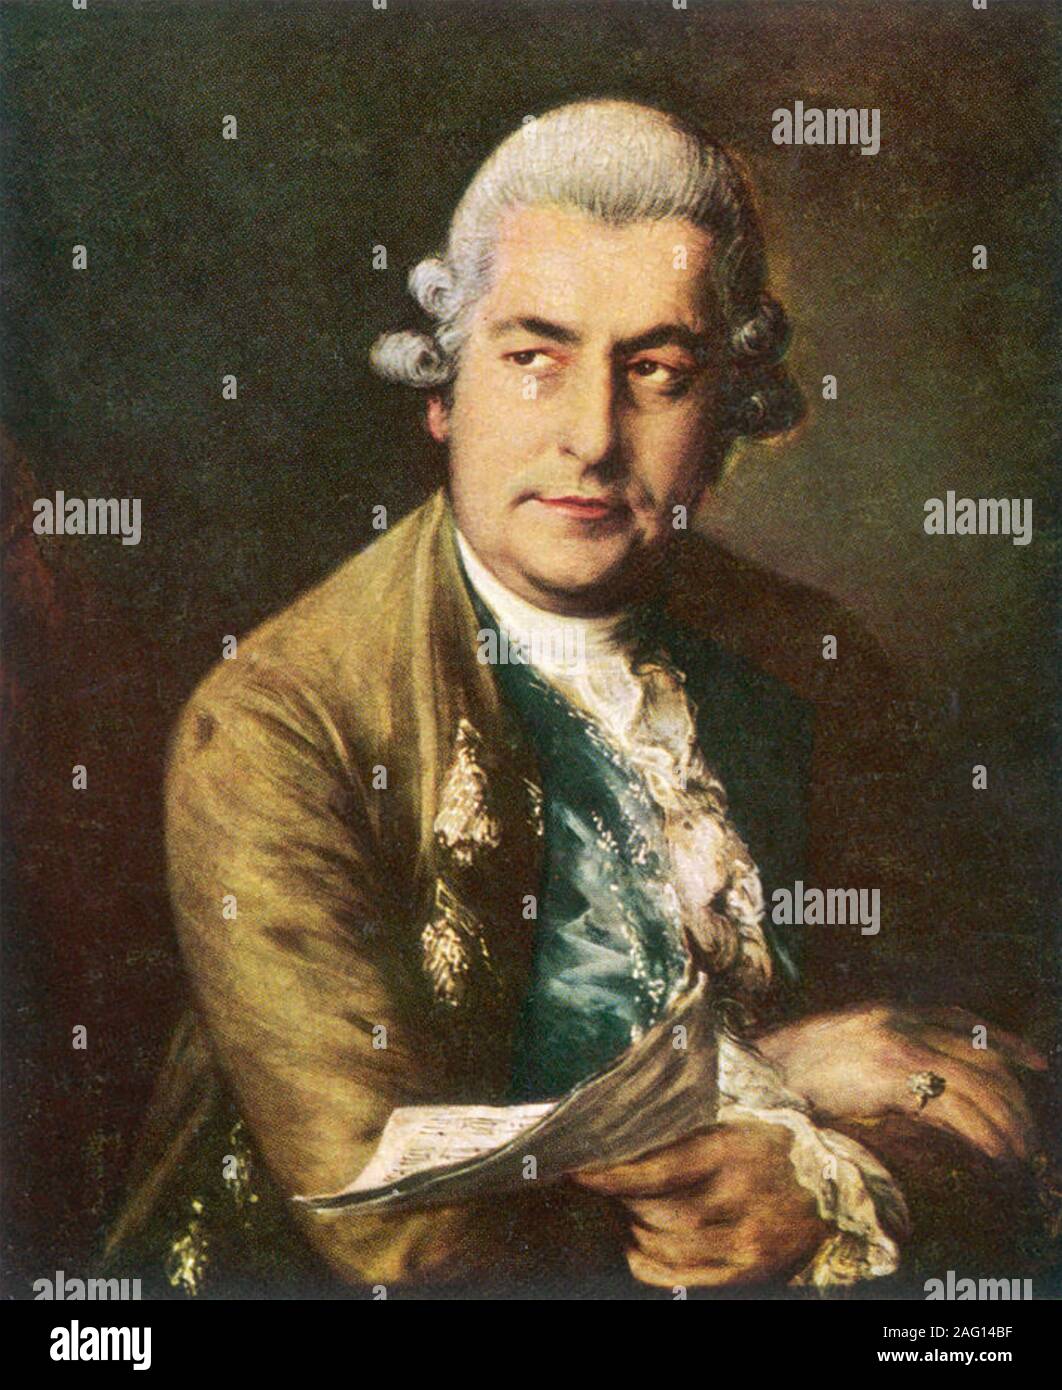 JOHANN Sebastian BACH (1685-1750) Tedesco compositore barocco Foto Stock